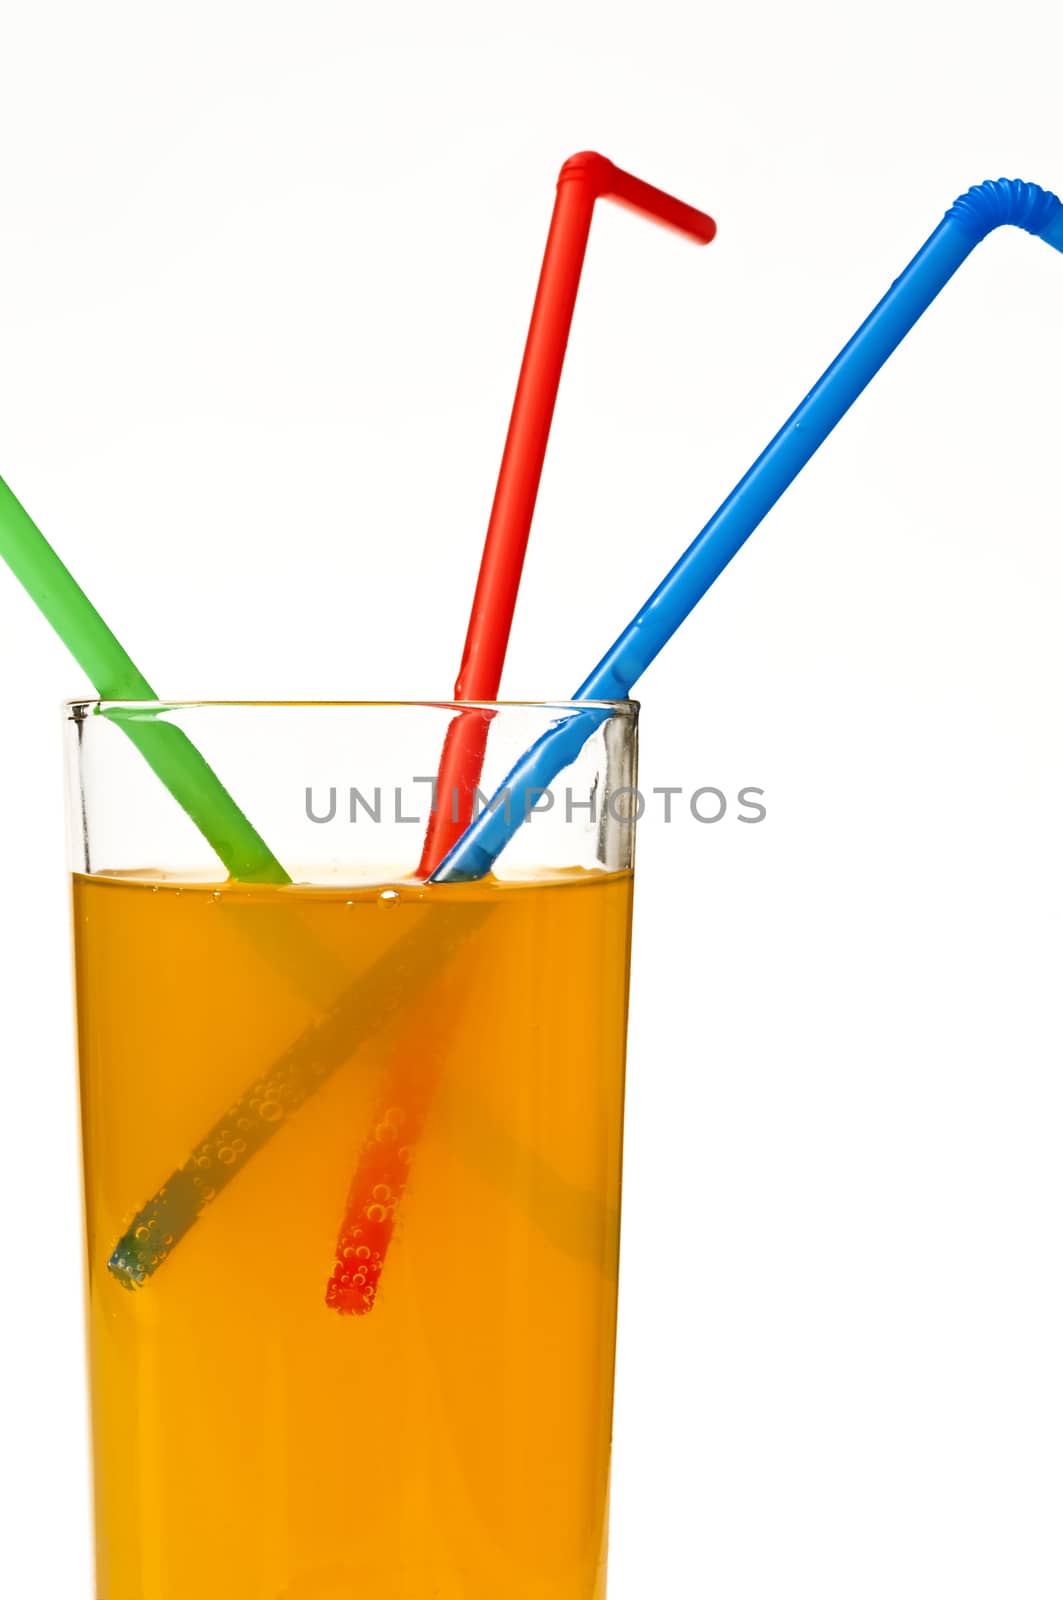 orange juice with straw